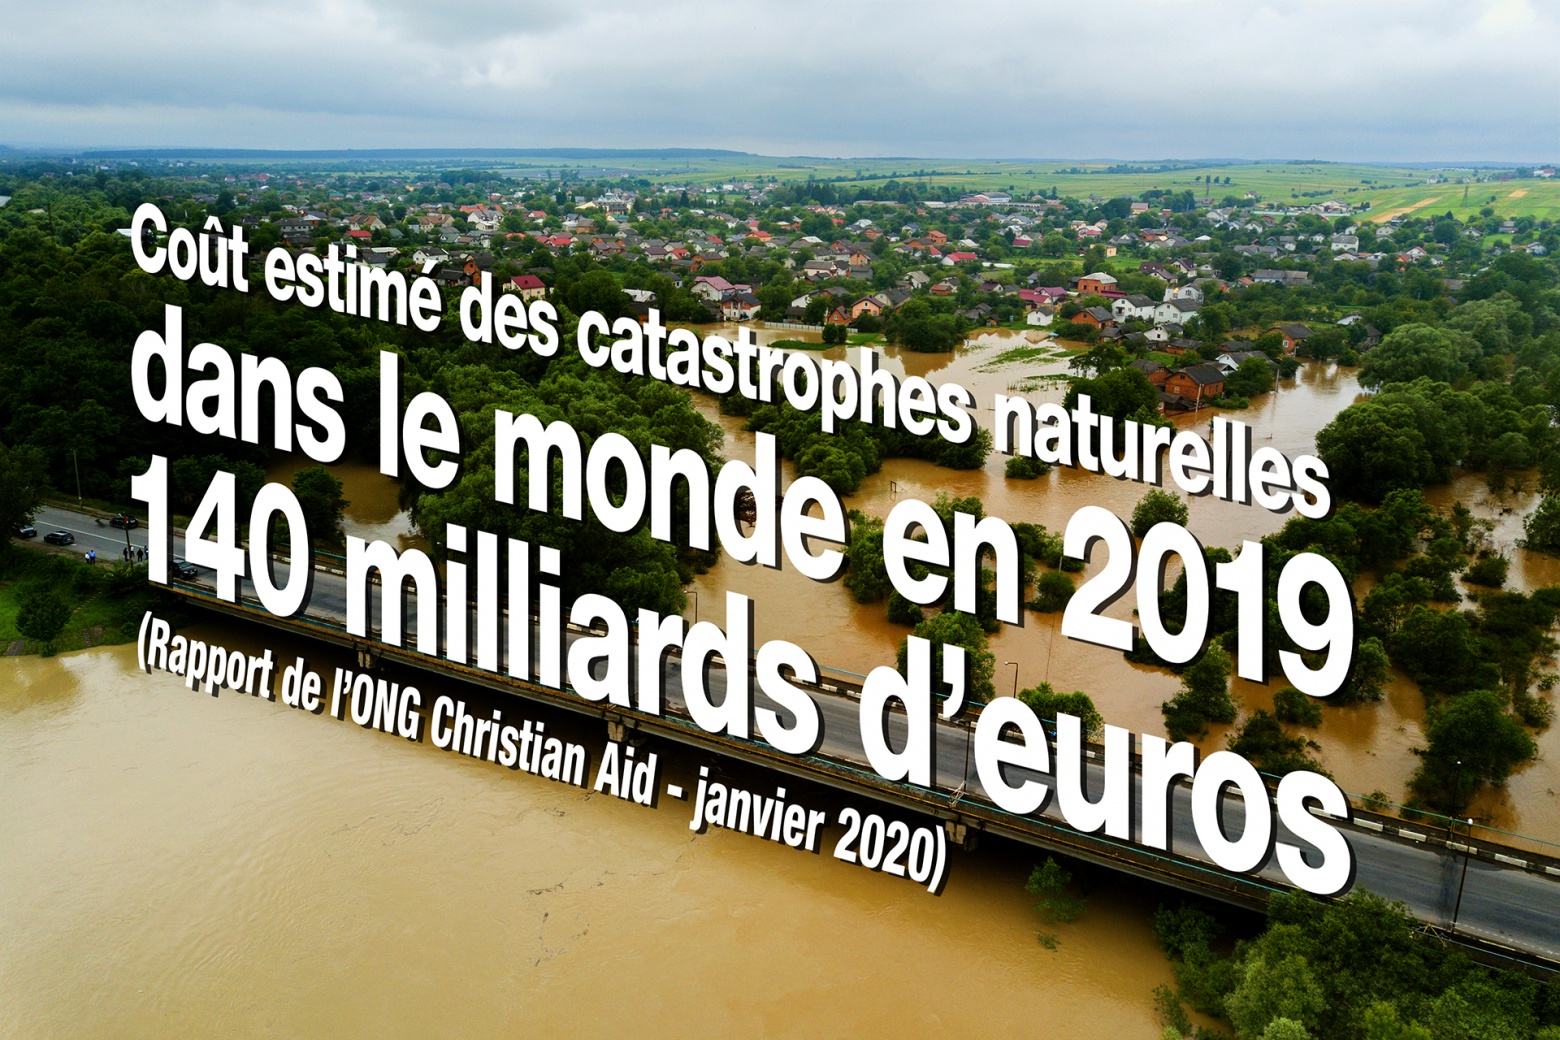 Coût estimé des catastrophes naturelles dans le monde en 2019 : 140 Md€ (source : rapport de l’ONG Christian Aid de janvier 2020)